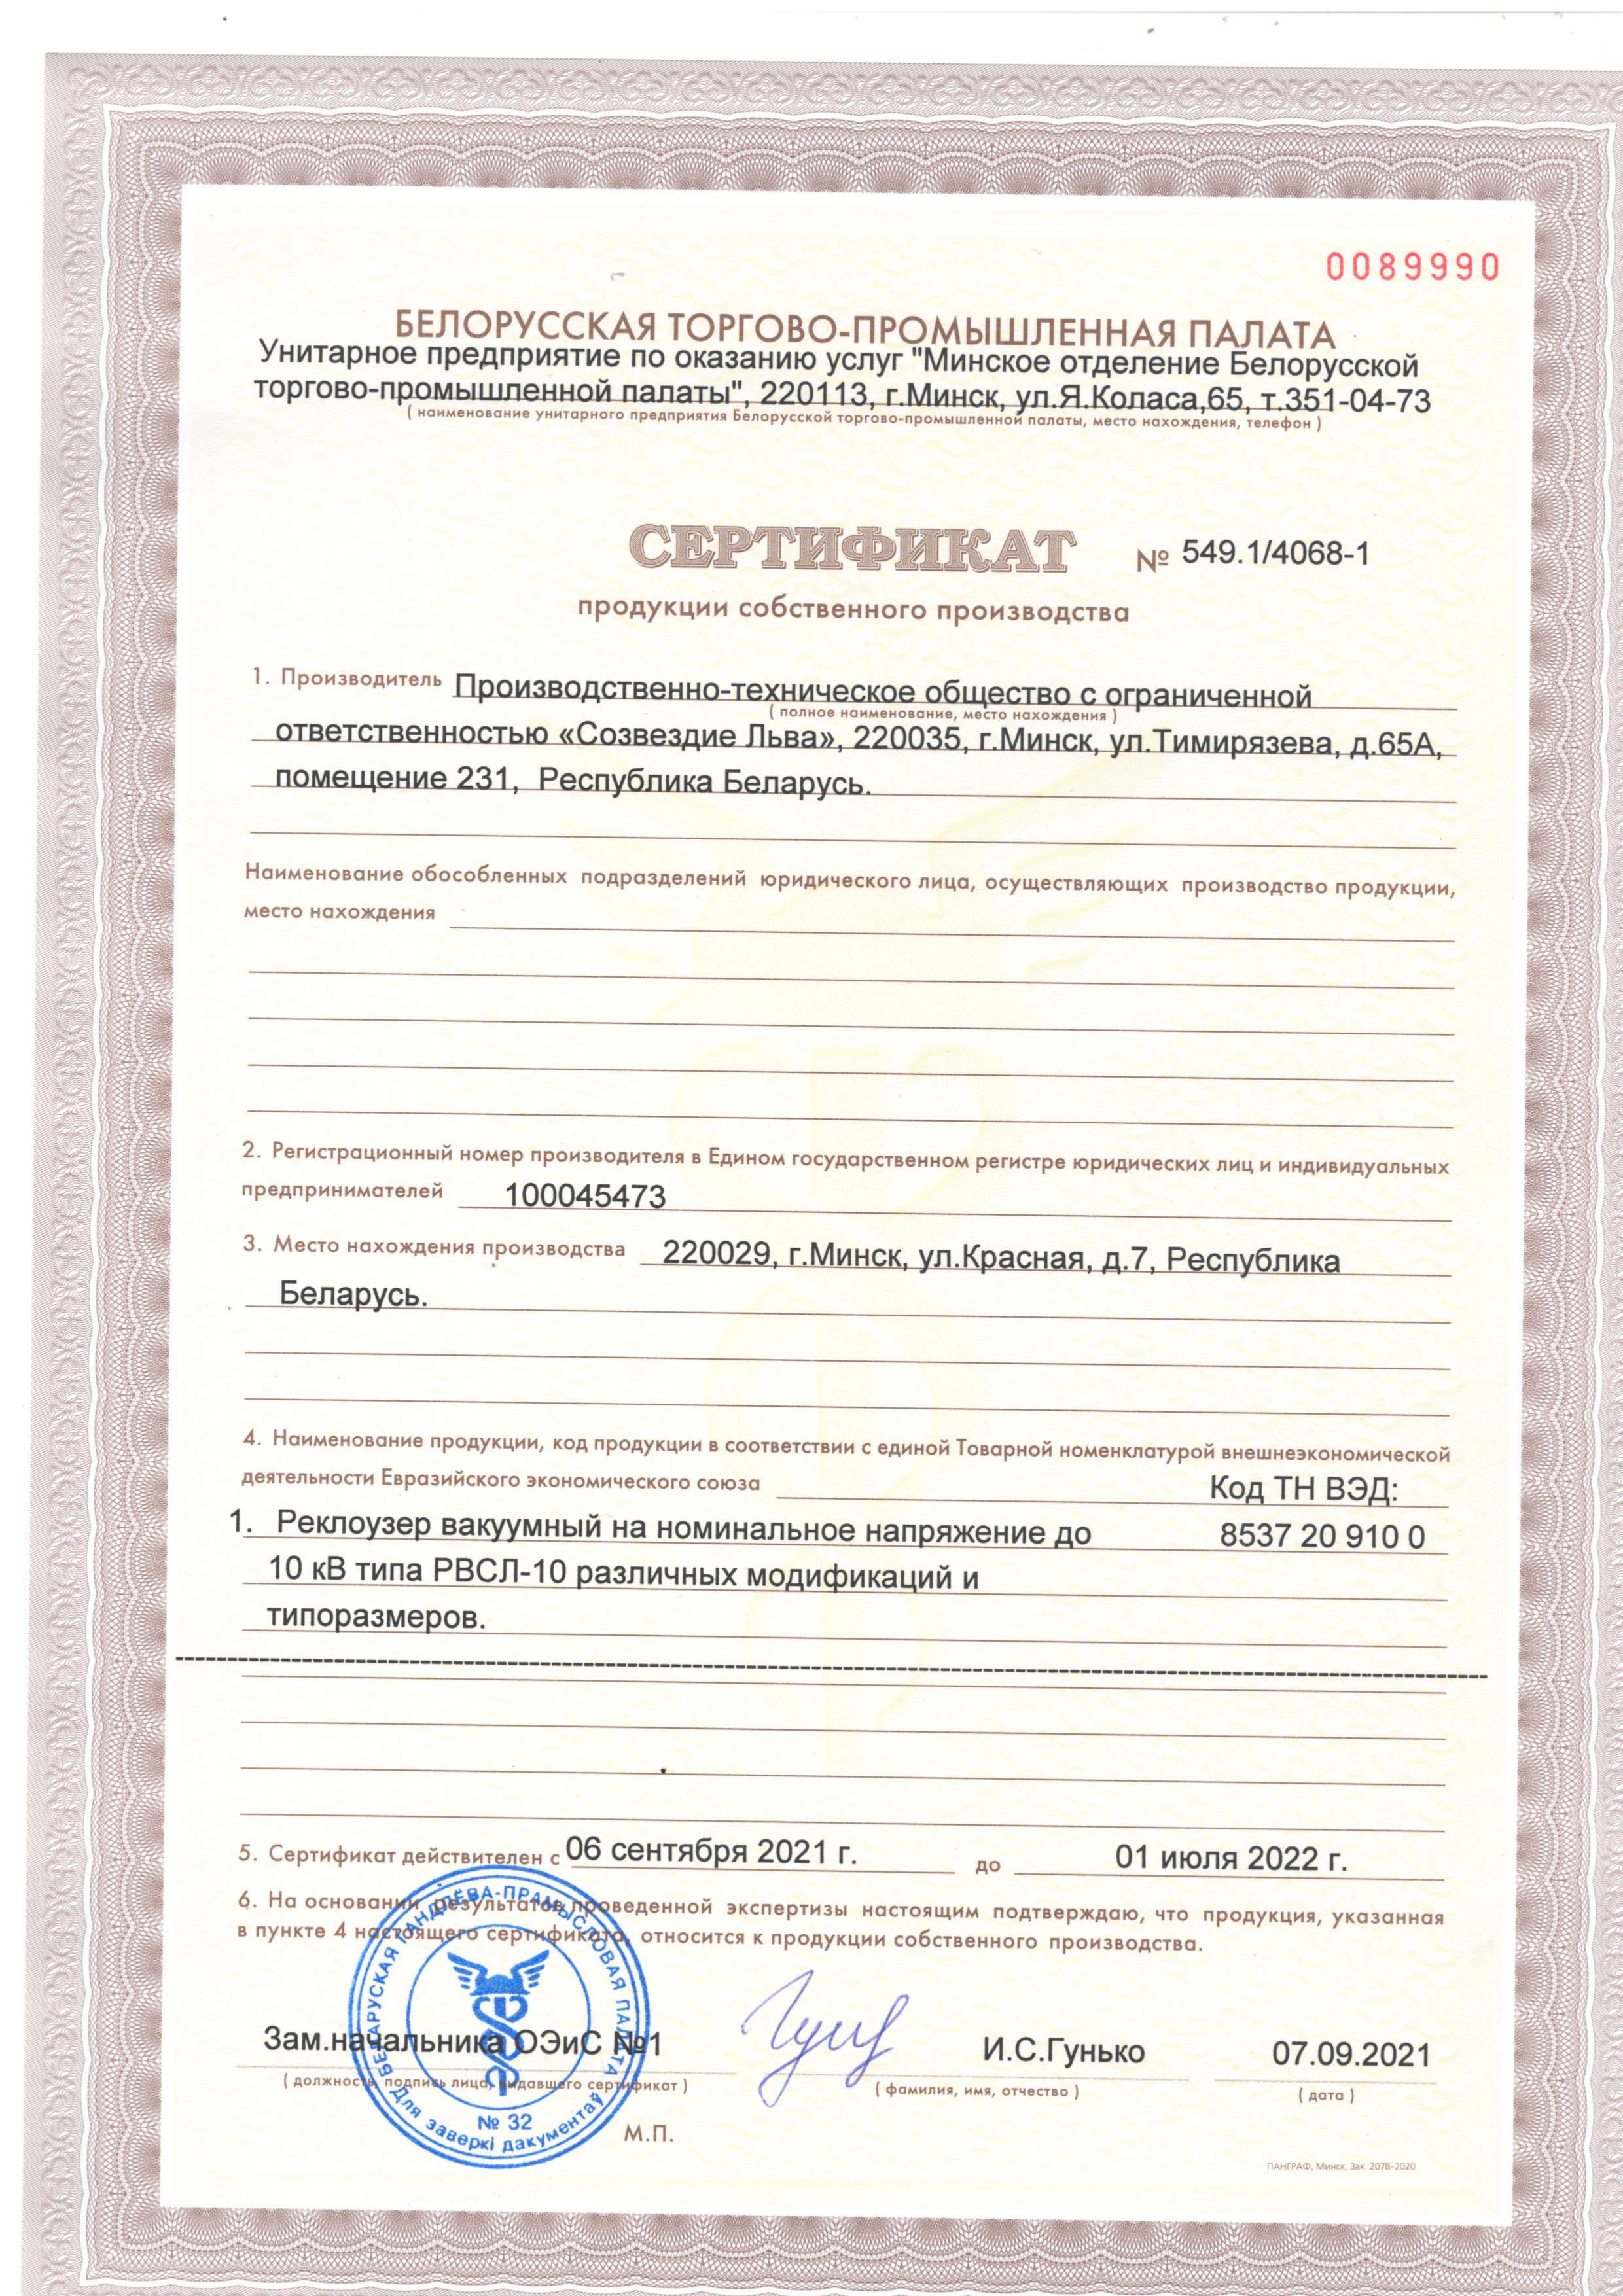 Сертификат собственного производства на реклоузеры